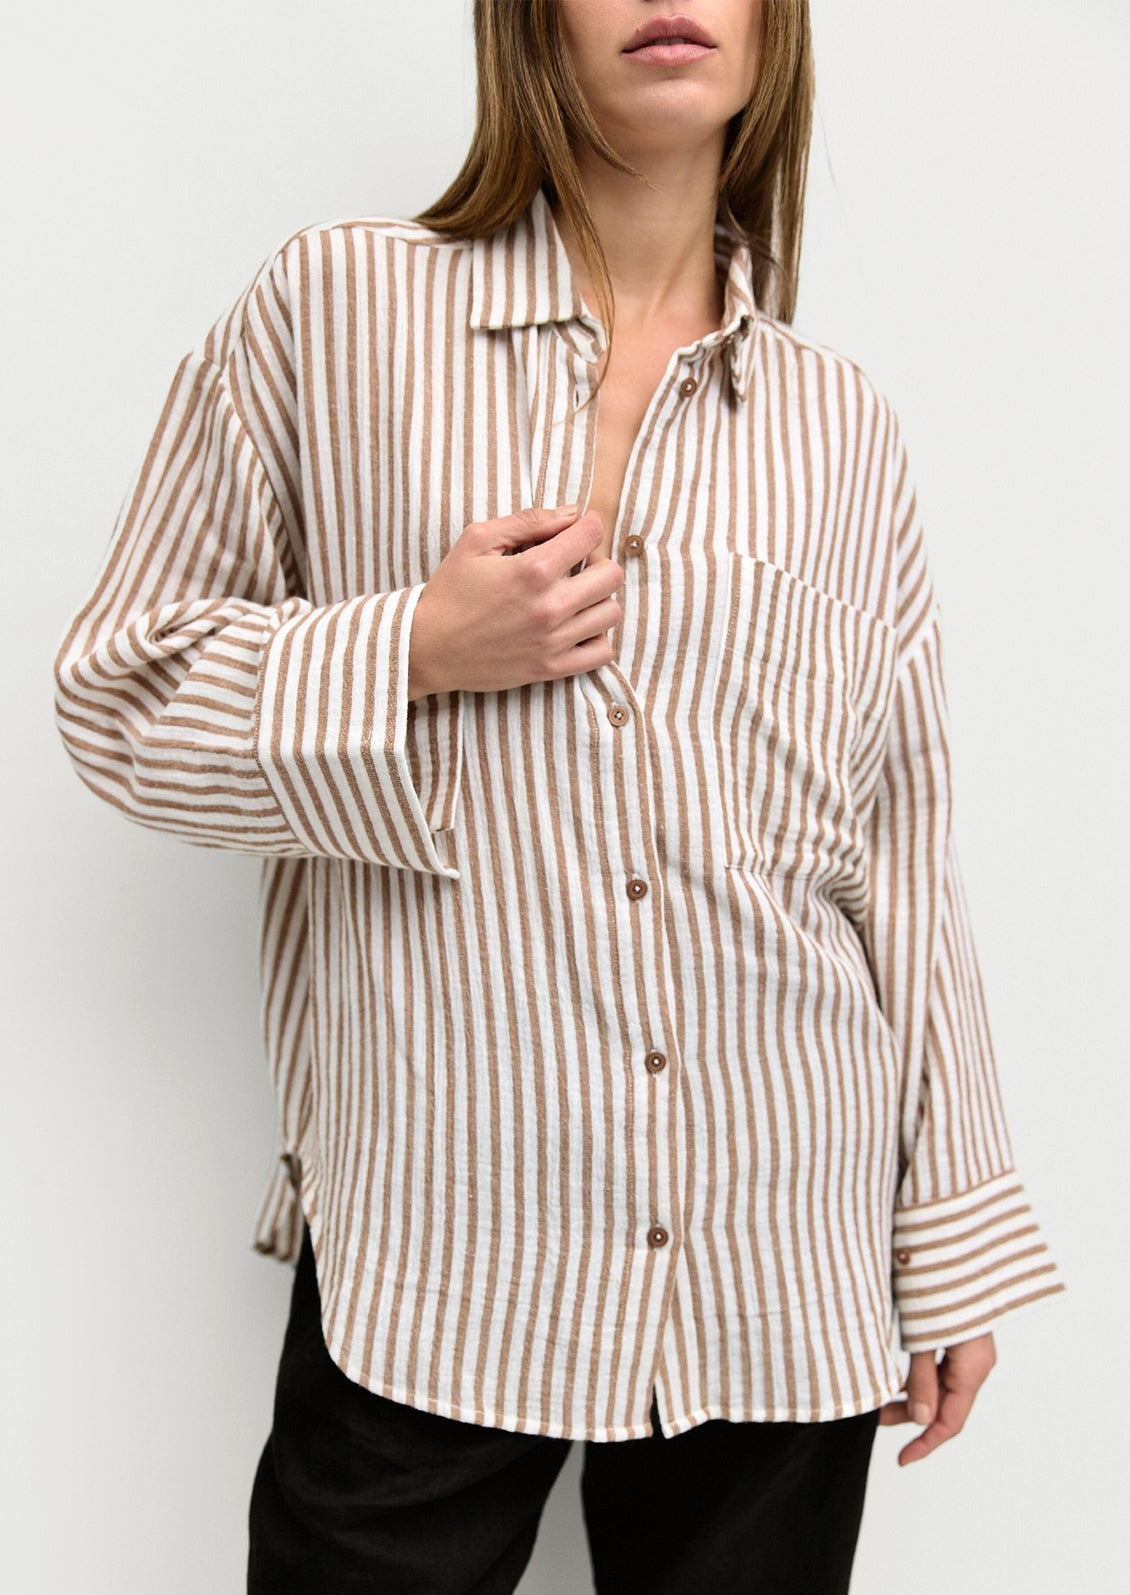 A woman wearing a white and brown stripe cotton gauze button down shirt.